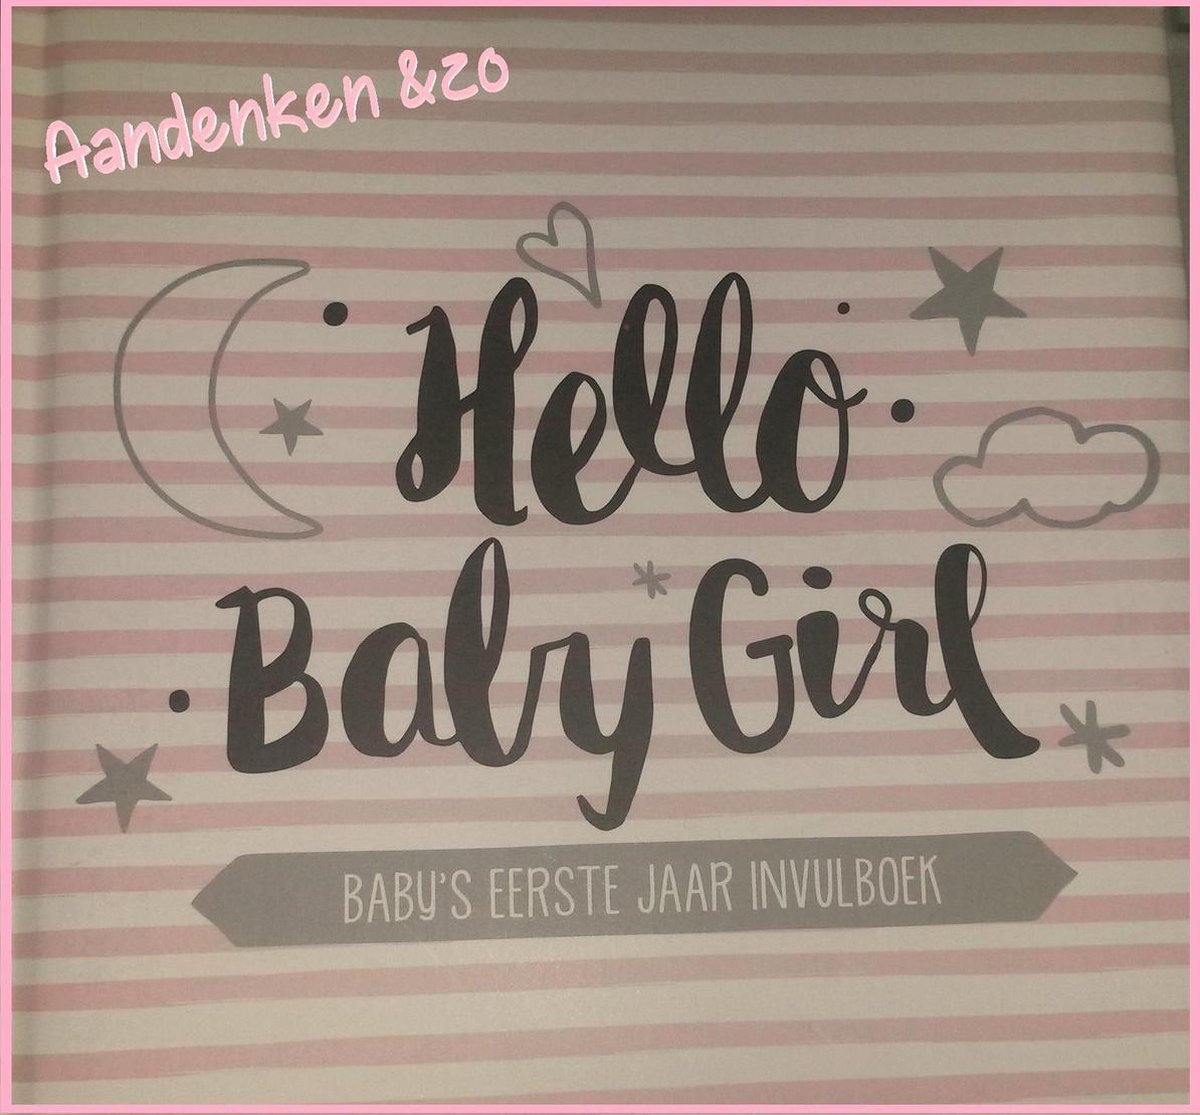 Baby's eerste jaar invulboek - Meisje - Hello Baby Girl